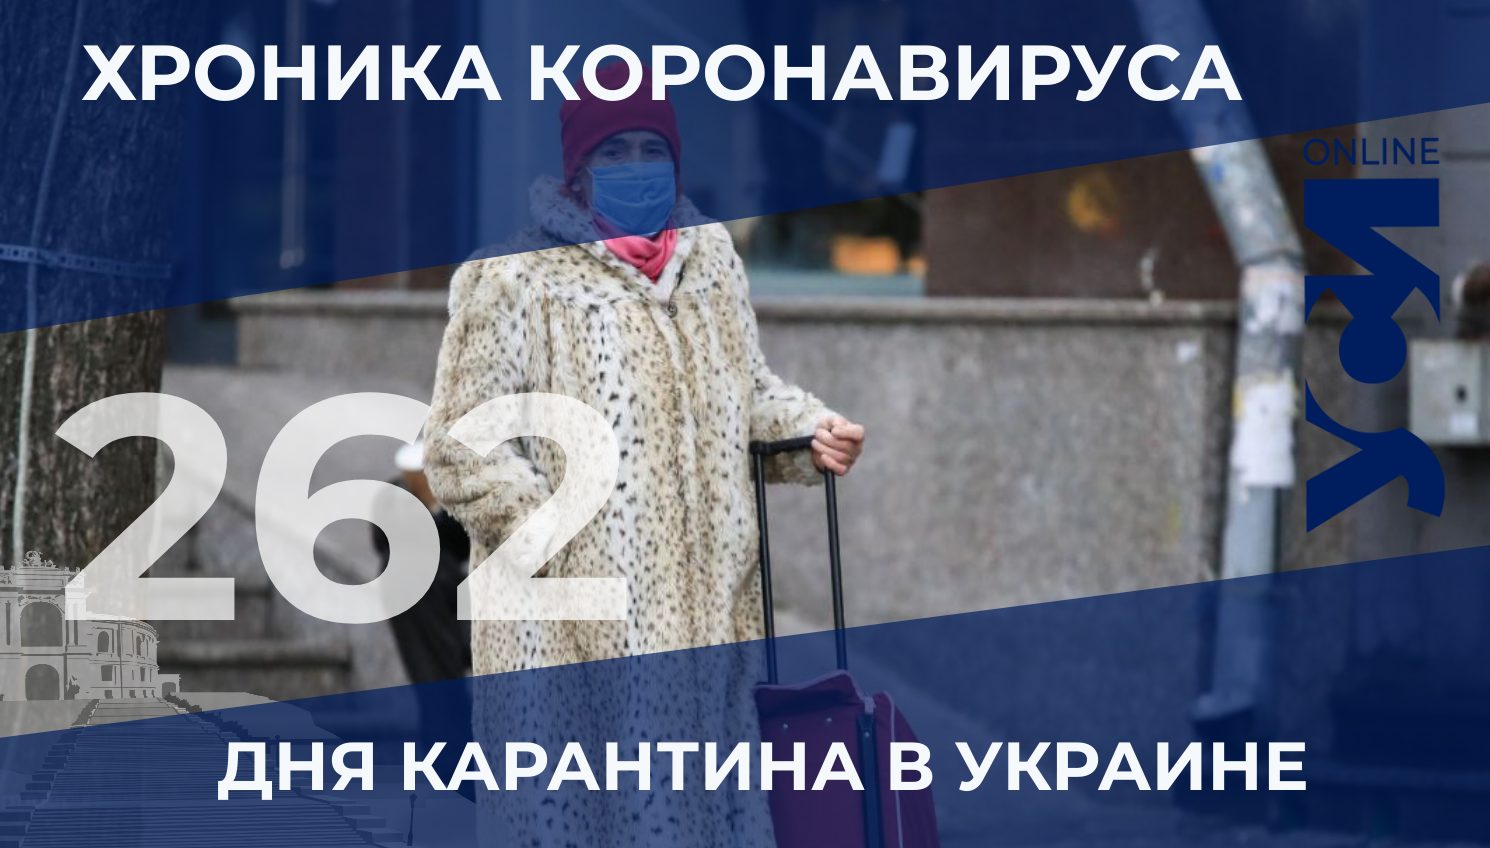 Хроника коронавируса: в Одесской области — 1280 новых случаев заражения «фото»